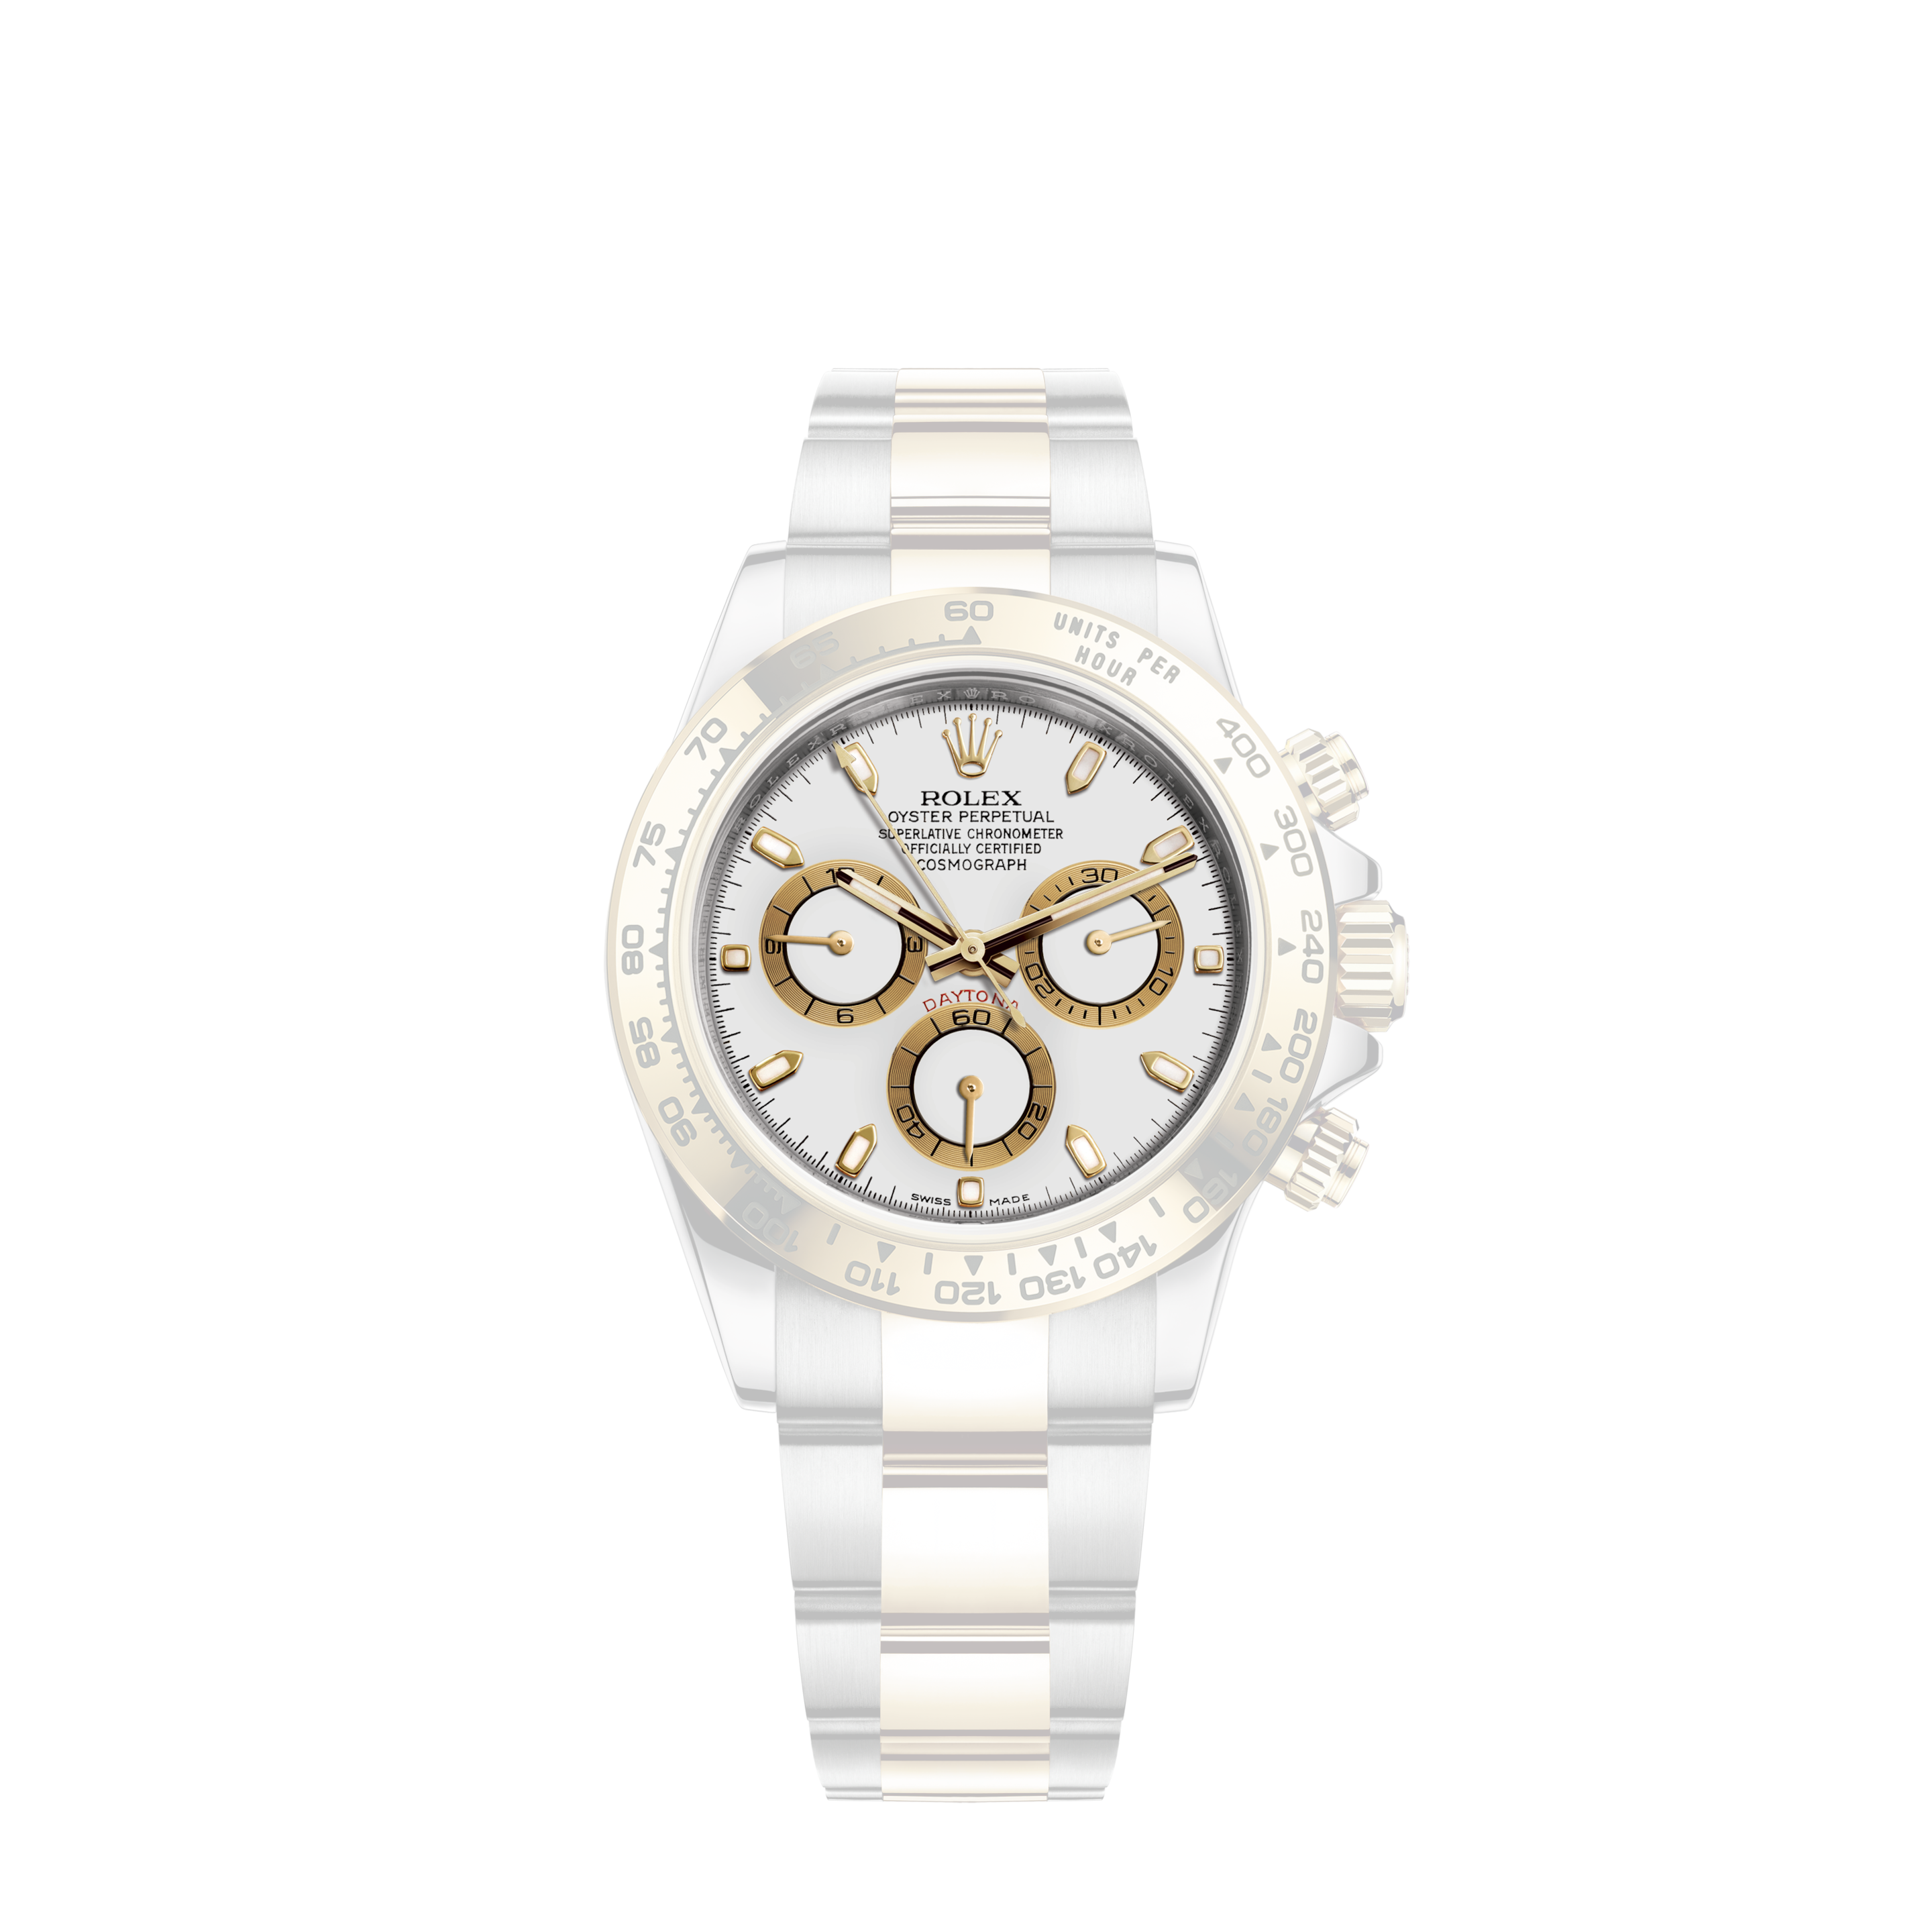 Rolex Submariner 116613LN 18k & Stainless Steel 40mm watch